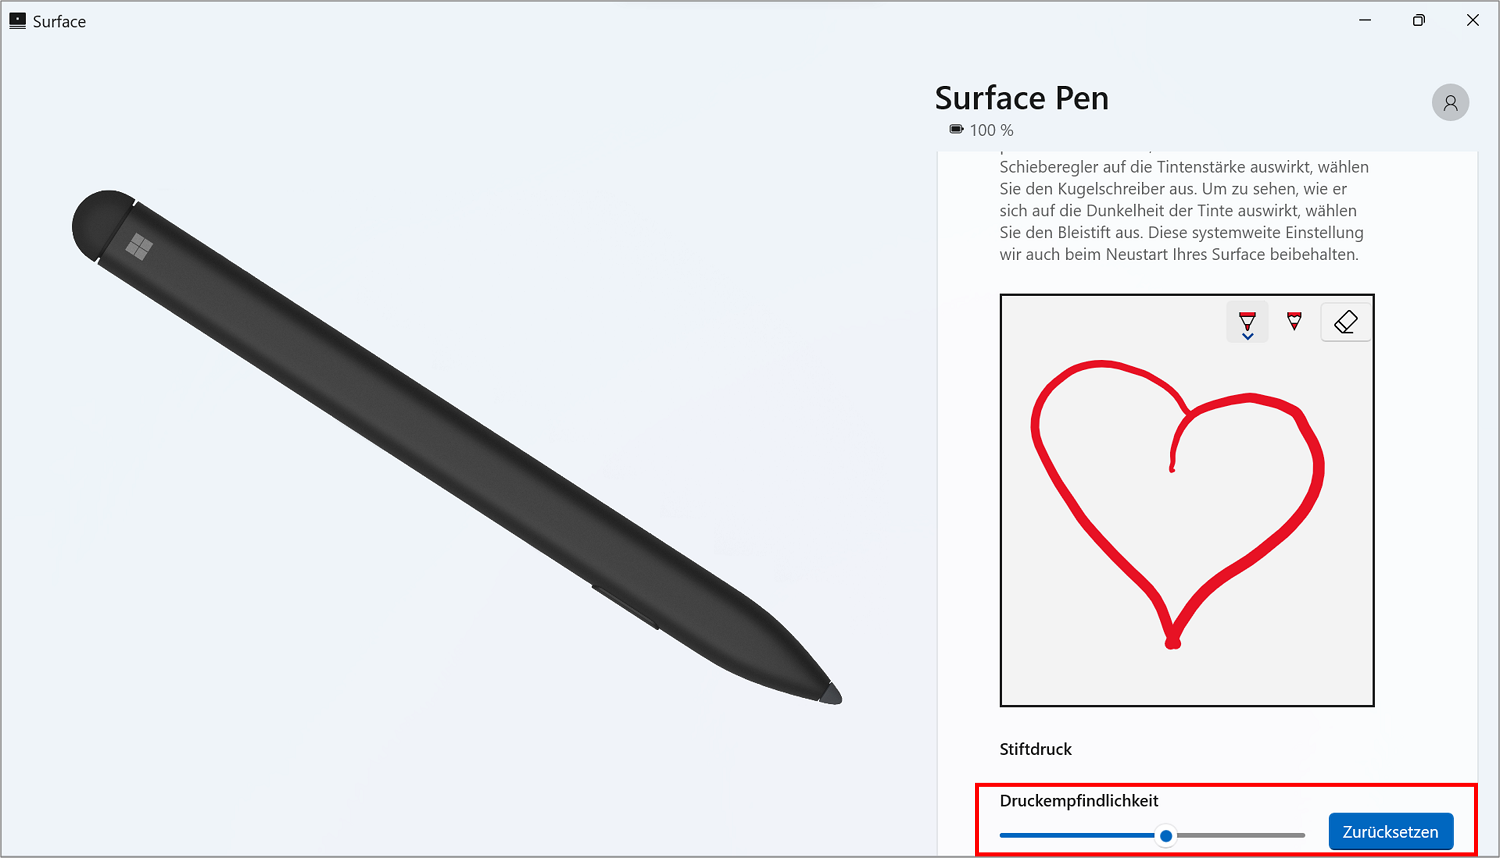 Sie können Die Druckempfindlichkeit des Surface Pen in der App anpassen und probieren.